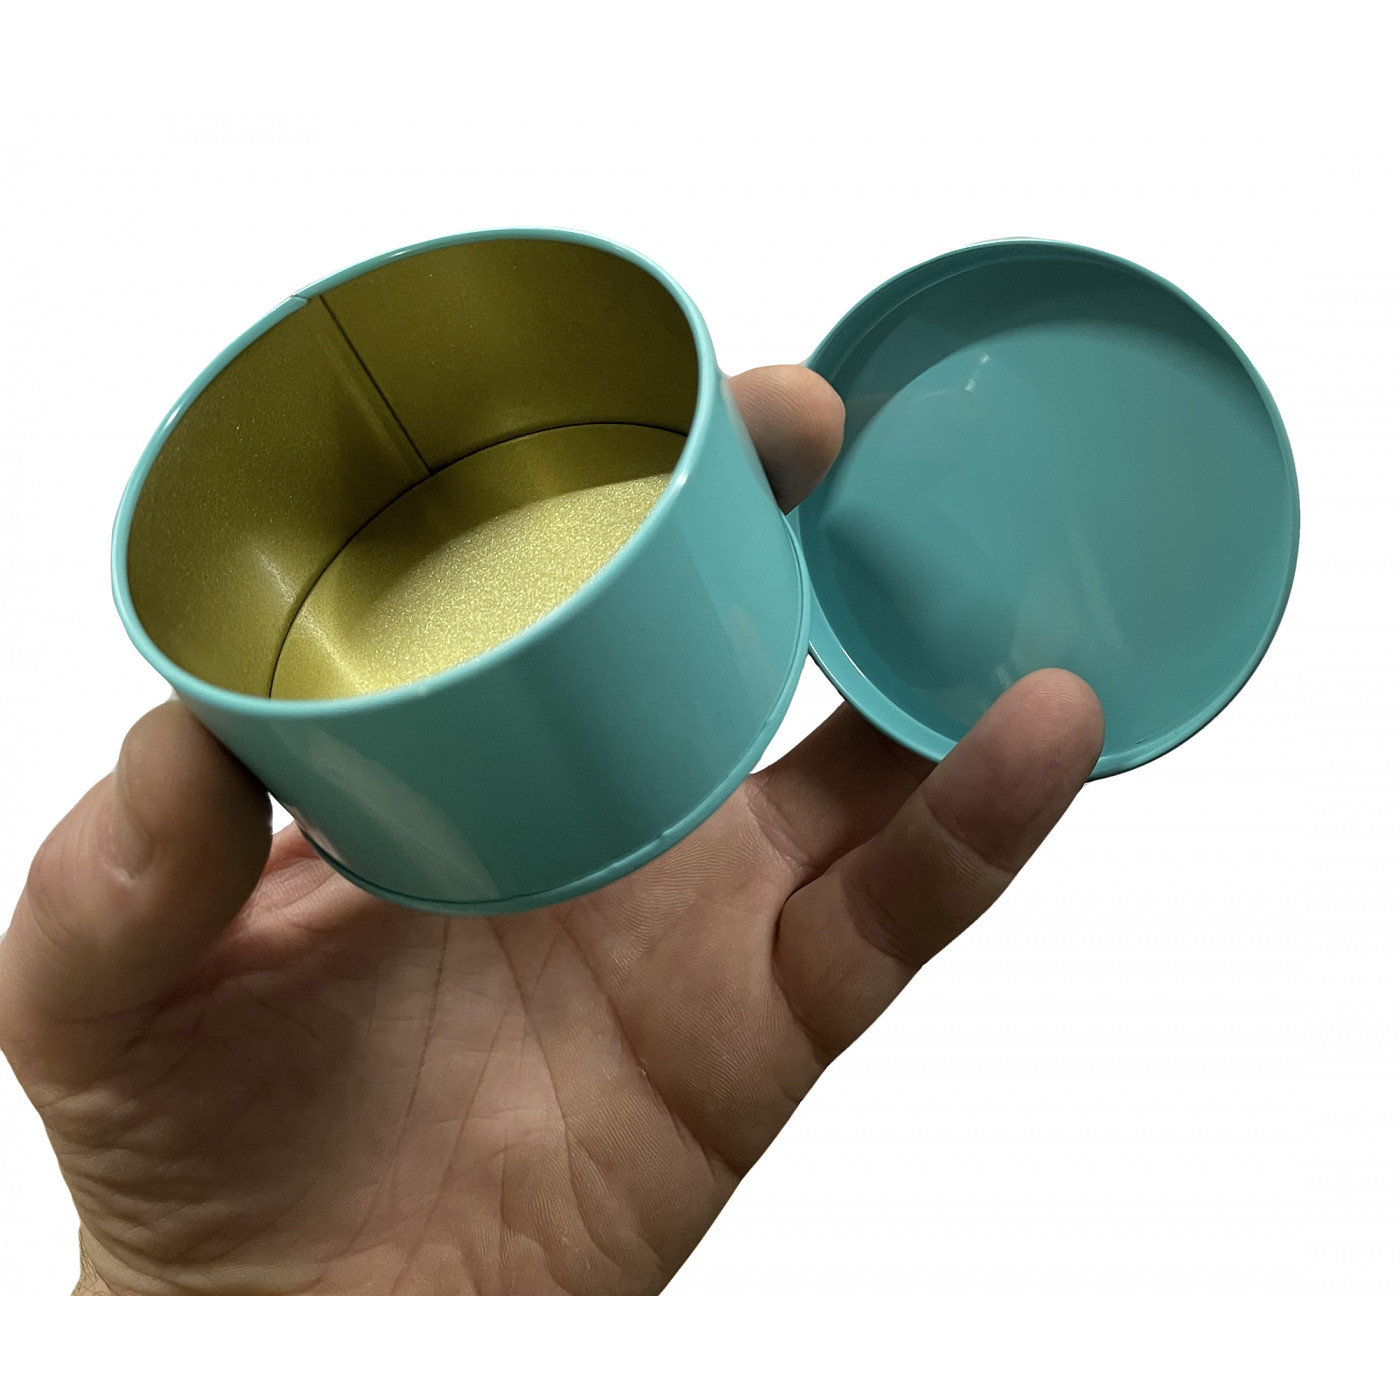 Małe metalowe pudełko z pokrywką (zielone, 75 mm średnicy, 45